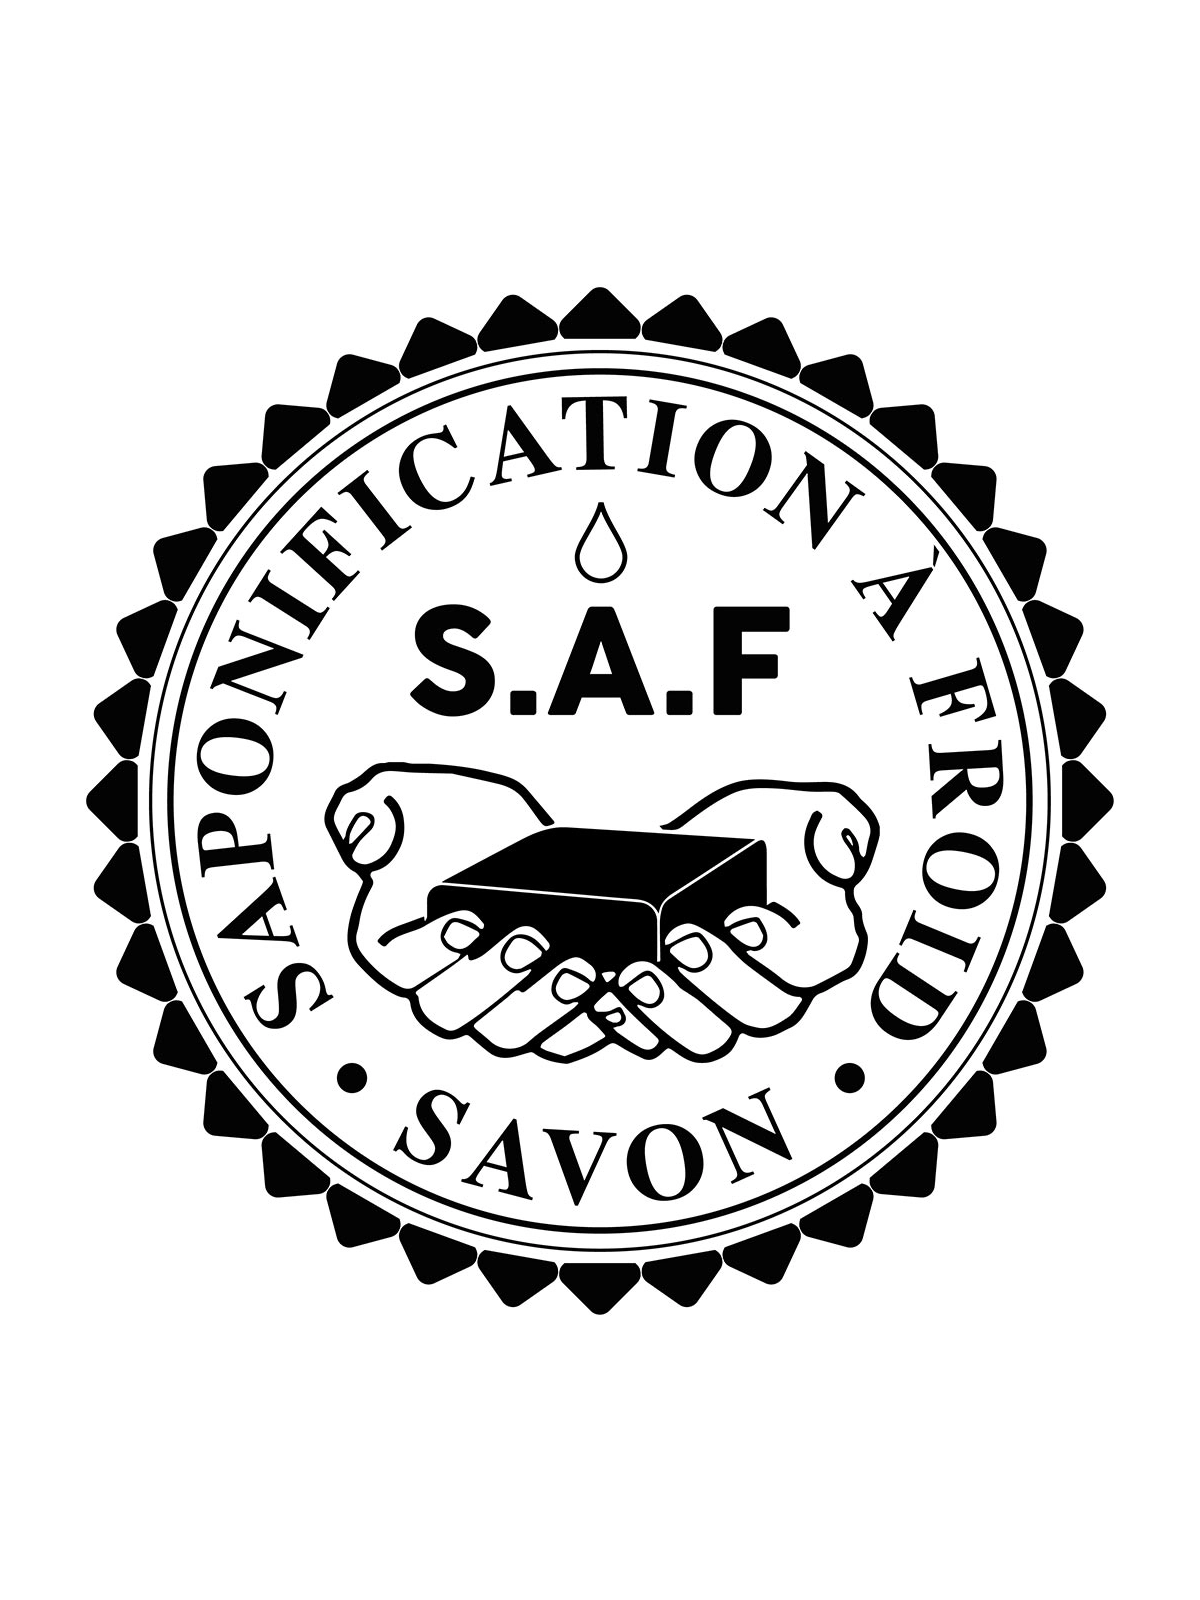 Soins Lavant Noham | Savon Tradition : Savon Ayurveda